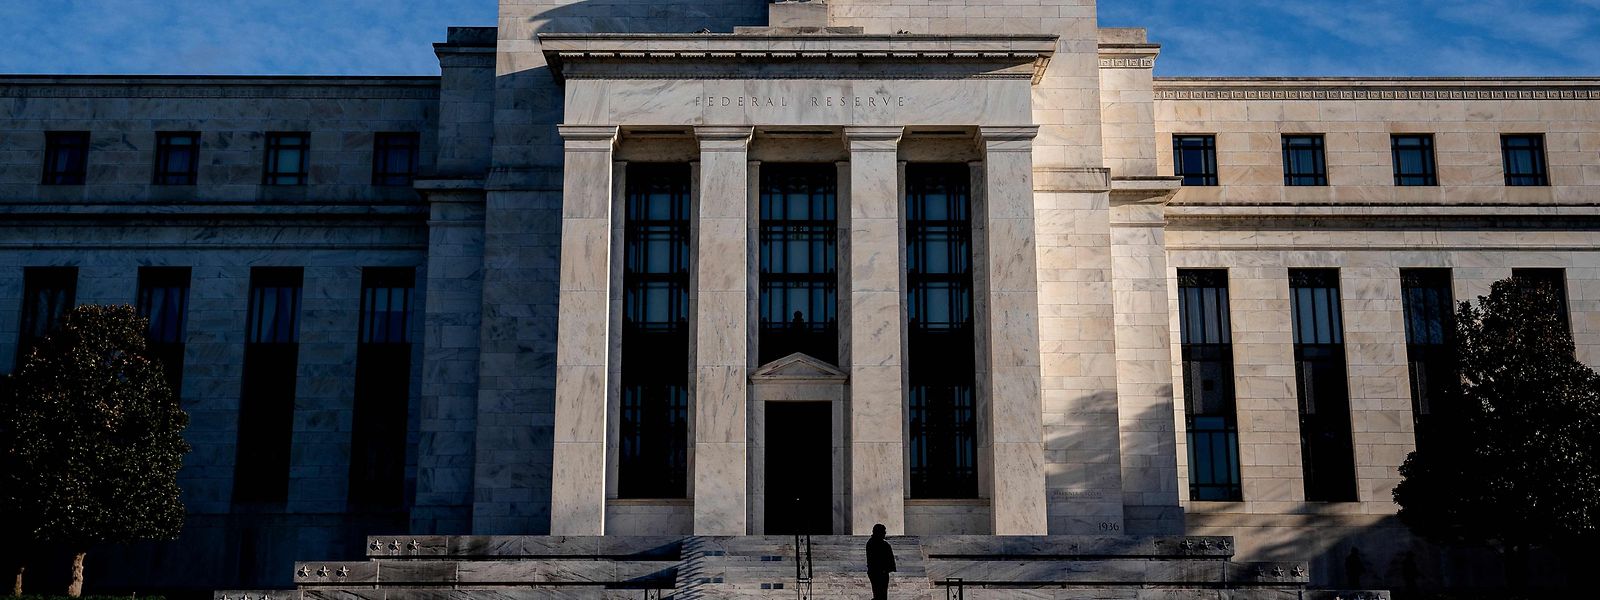 Das Fed-Gebäude in Washington.